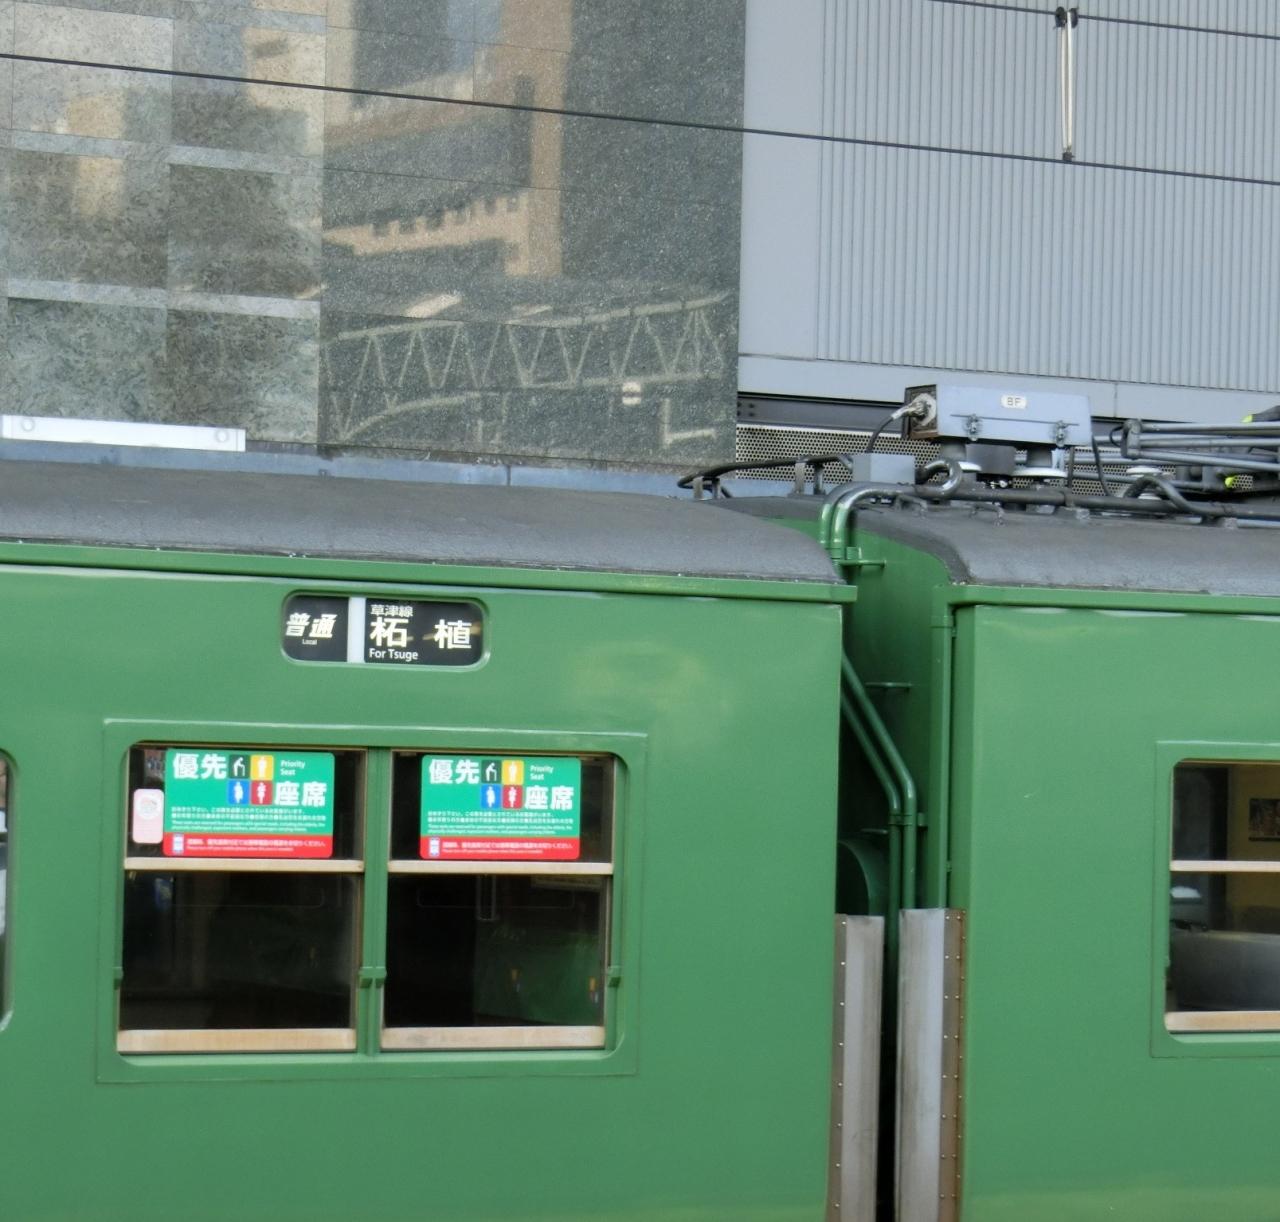 19年 超大型連休の旅の思い出 緑の電車と 草津 滋賀 滋賀県 の旅行記 ブログ By Sh 50さん フォートラベル